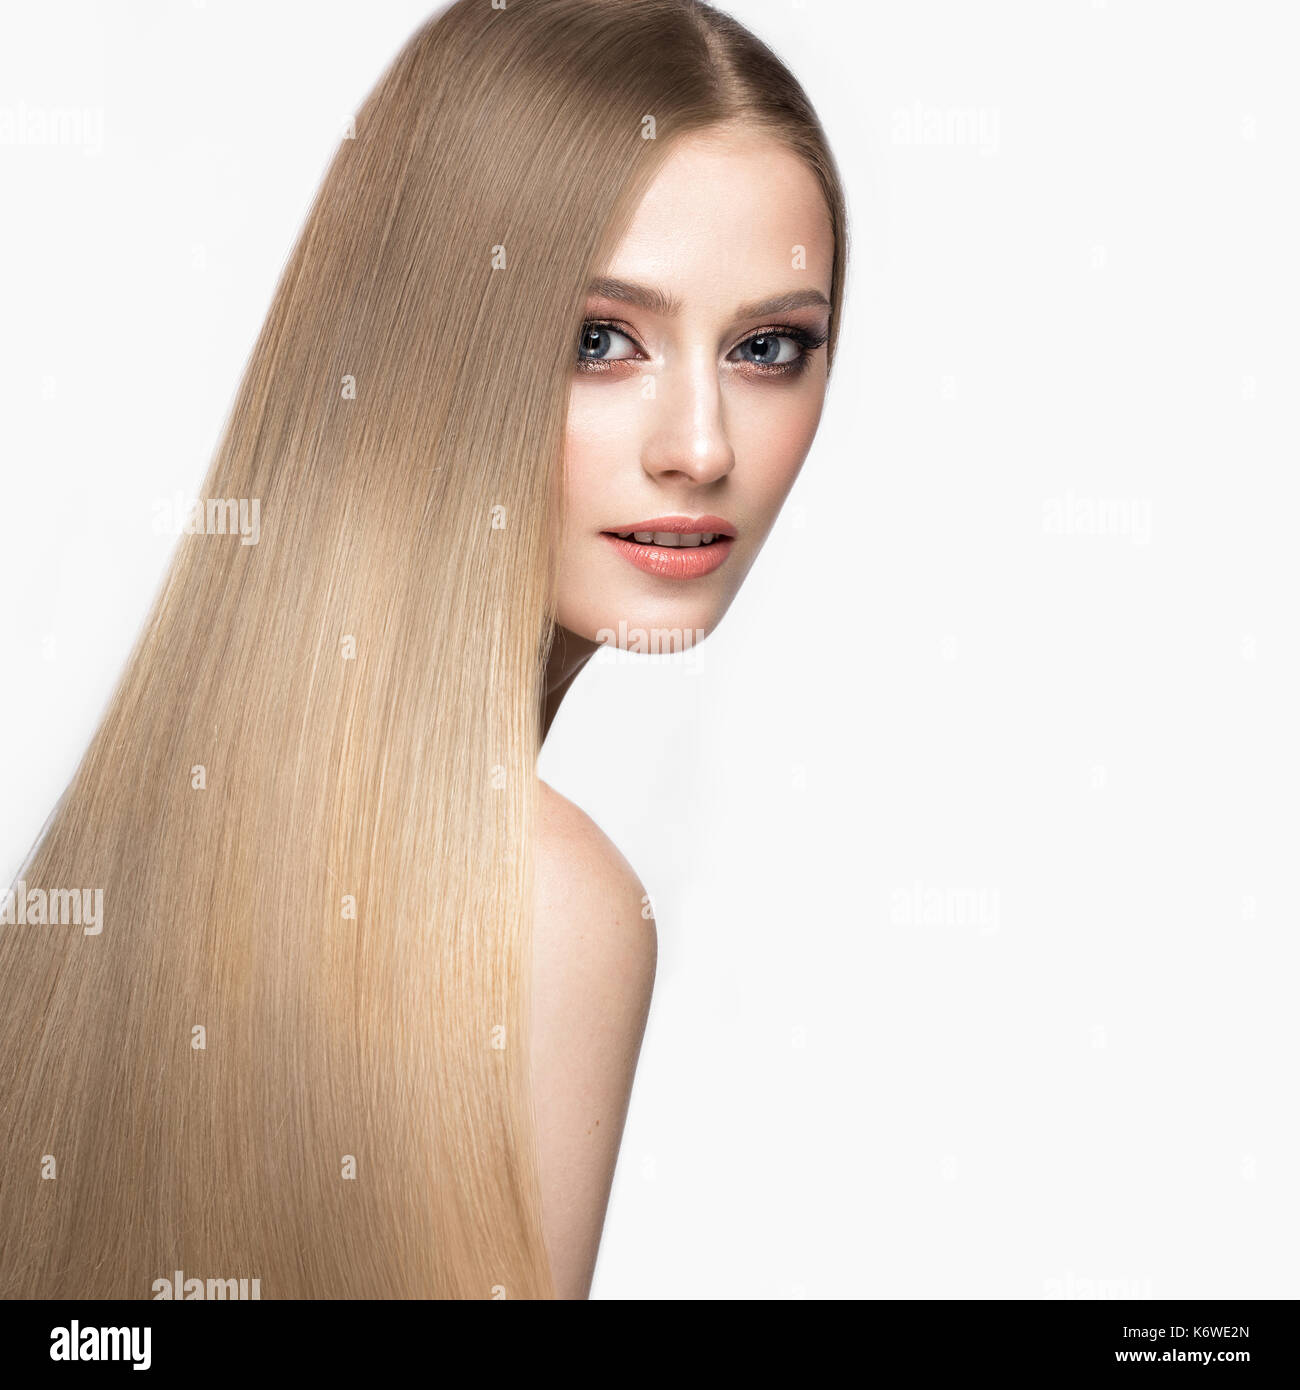 Schone Blonde Madchen Mit Einem Perfekt Glatte Haare Und Klassische Make Up Schonheit Gesicht Stockfotografie Alamy